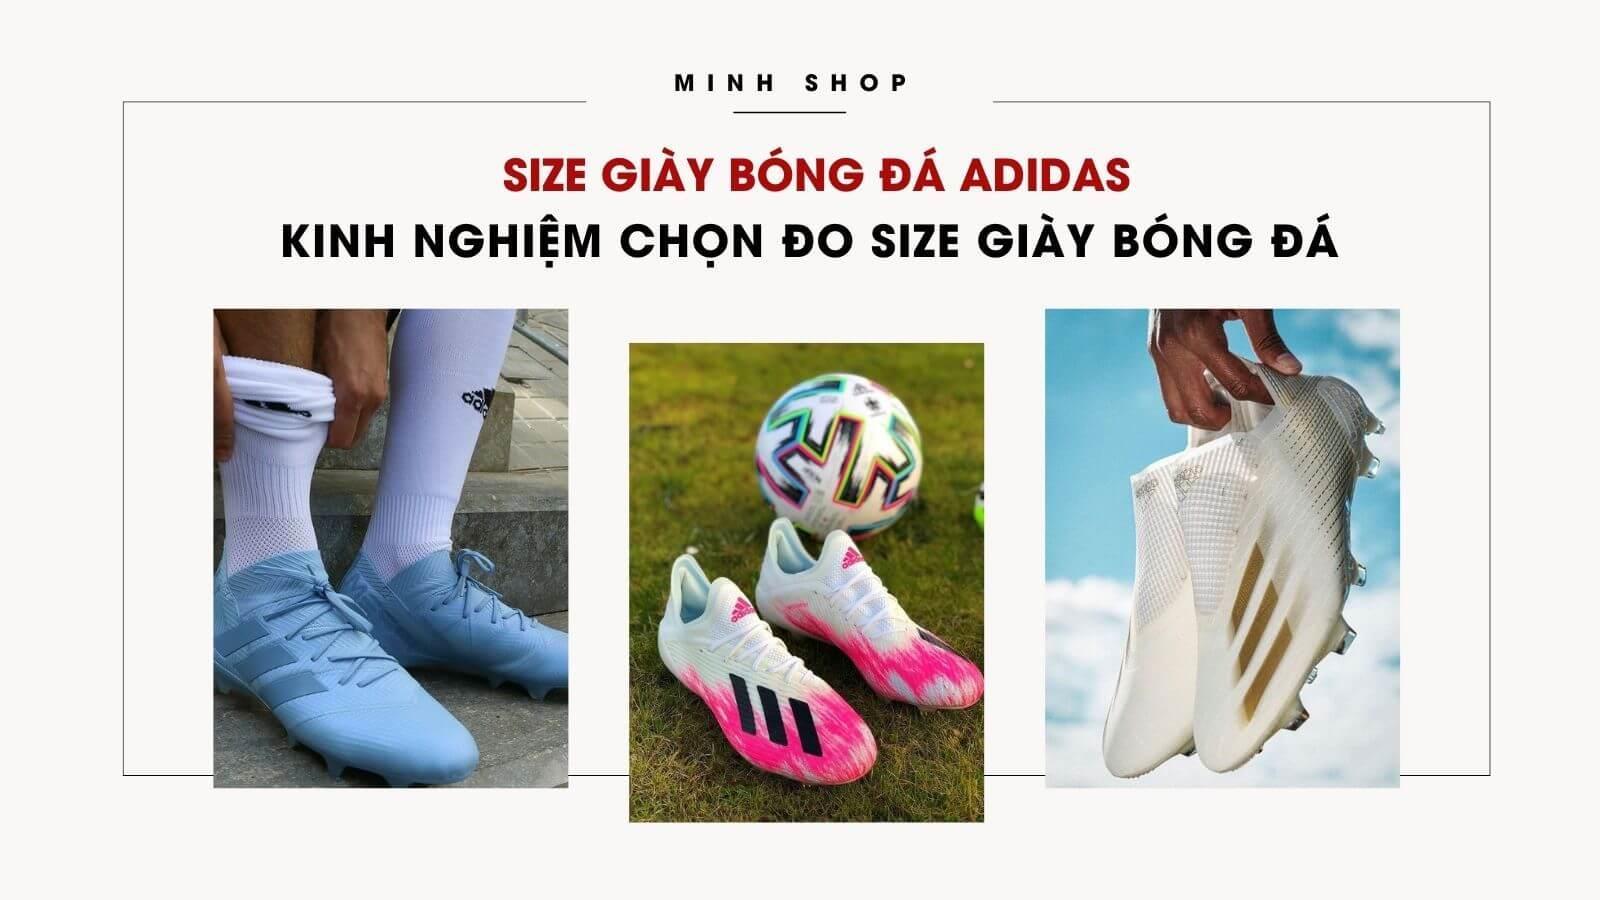 size-giay-bong-da-adidas-kinh-nghiem-chon-do-size-giay-bong-da-vua-chan